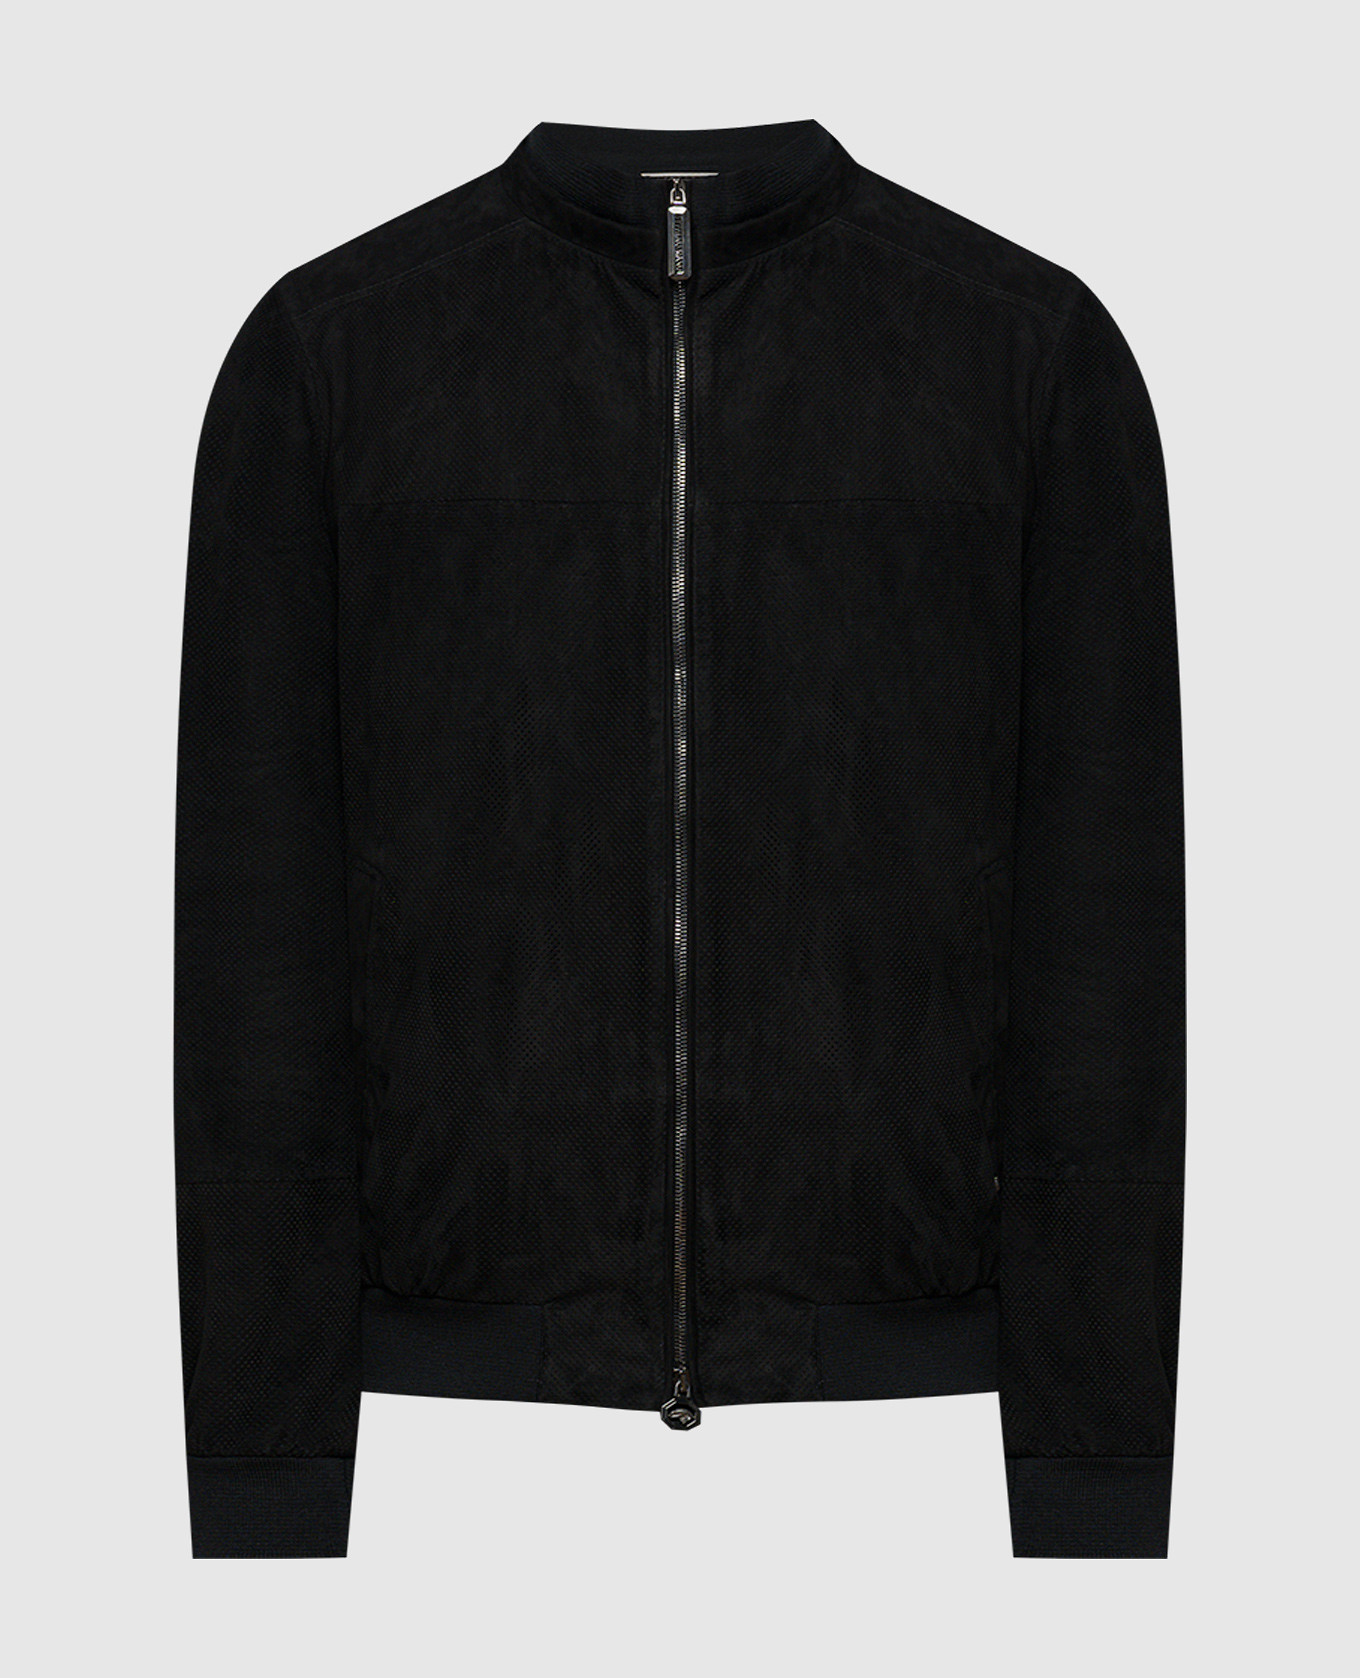 Black leather jacket with logo